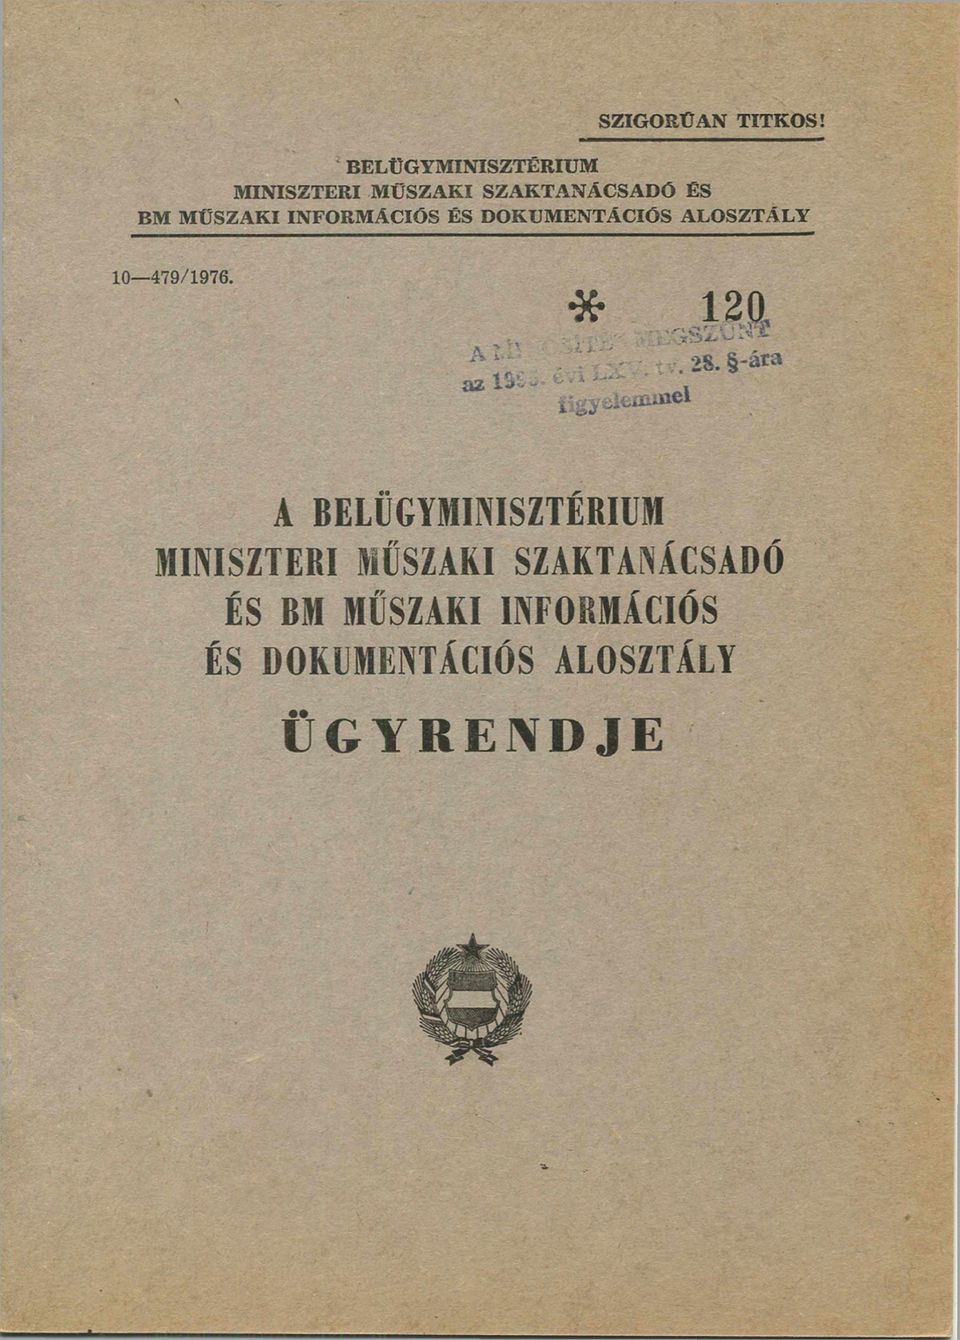 MŰSZAKI INFORMÁCIÓS ÉS DOKUMENTÁCIÓS ALOSZTÁLY 10-479/1976.